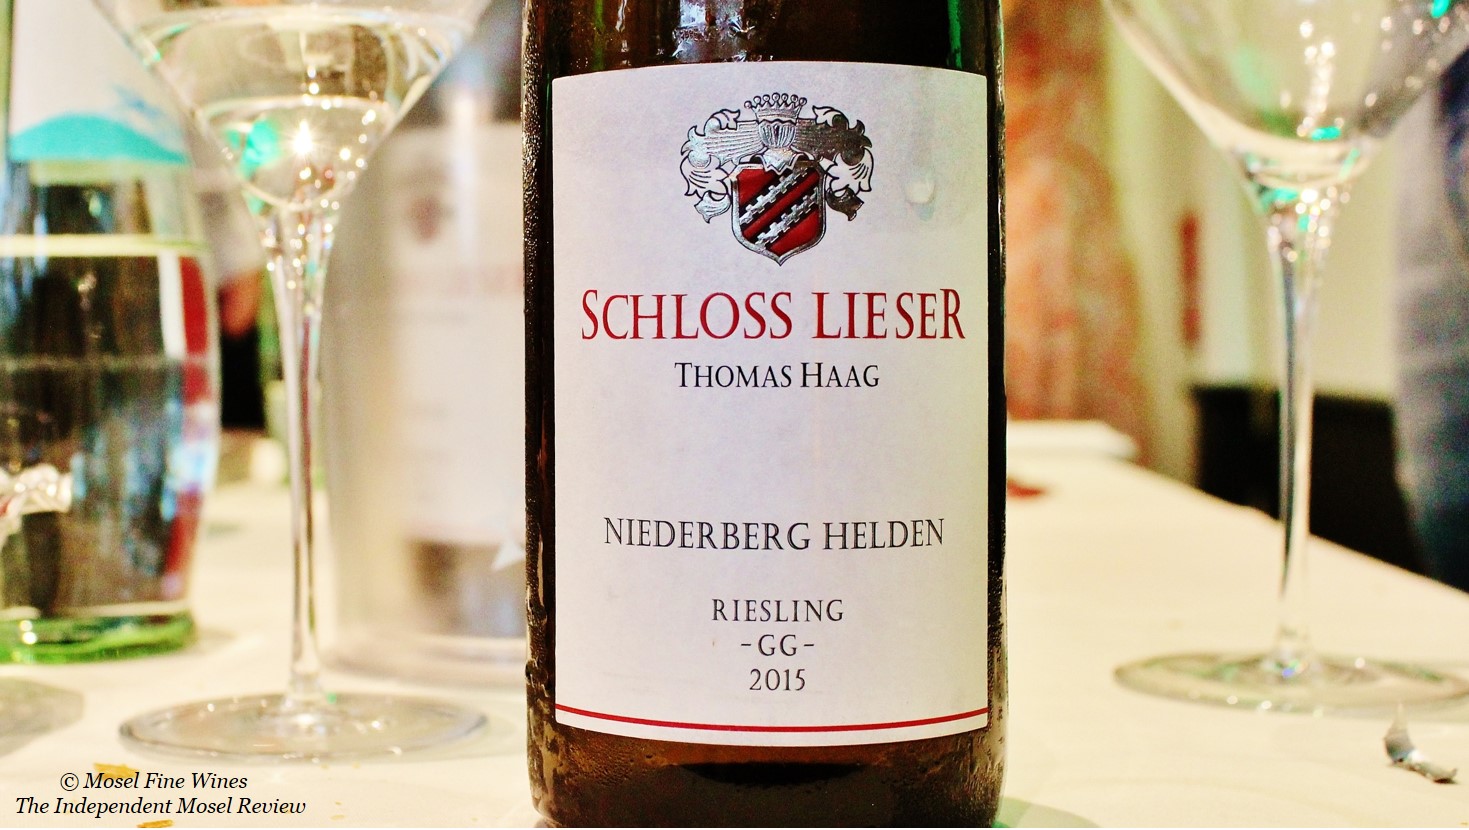 Weingut Schloss Lieser | Lieserer Niederberg Helden Riesling Grosses Gewächs 2015 | Label